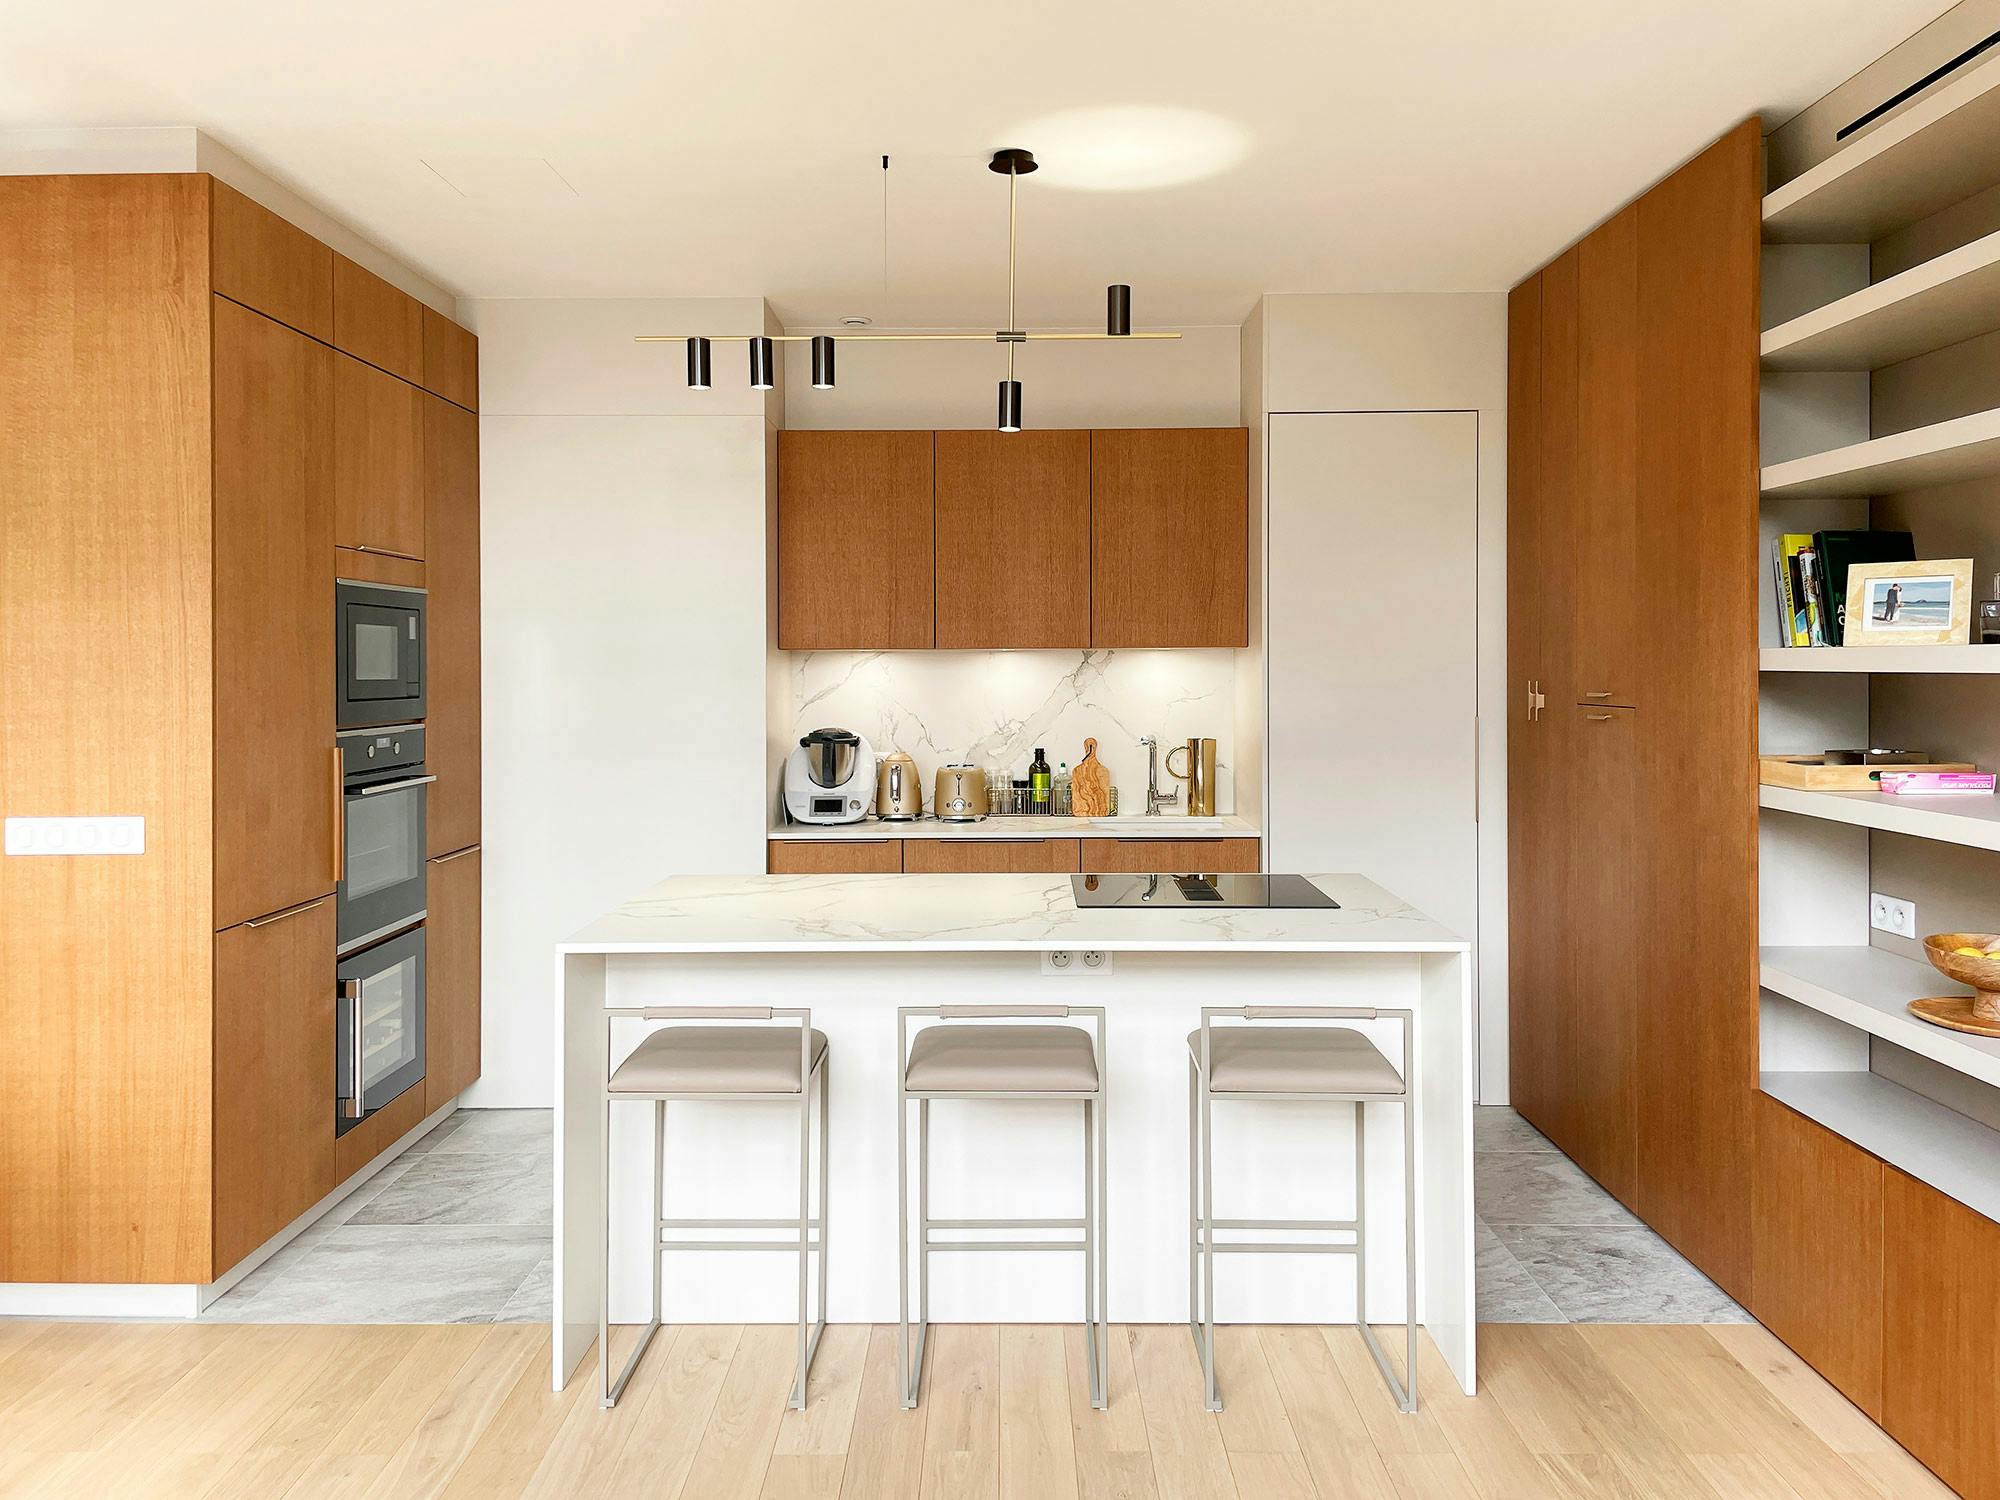 Bildnummer 40 des aktuellen Abschnitts von Dekton Kira is the star of the kitchen in this Madrid flat that redefines the concept of luxury von Cosentino Deutschland